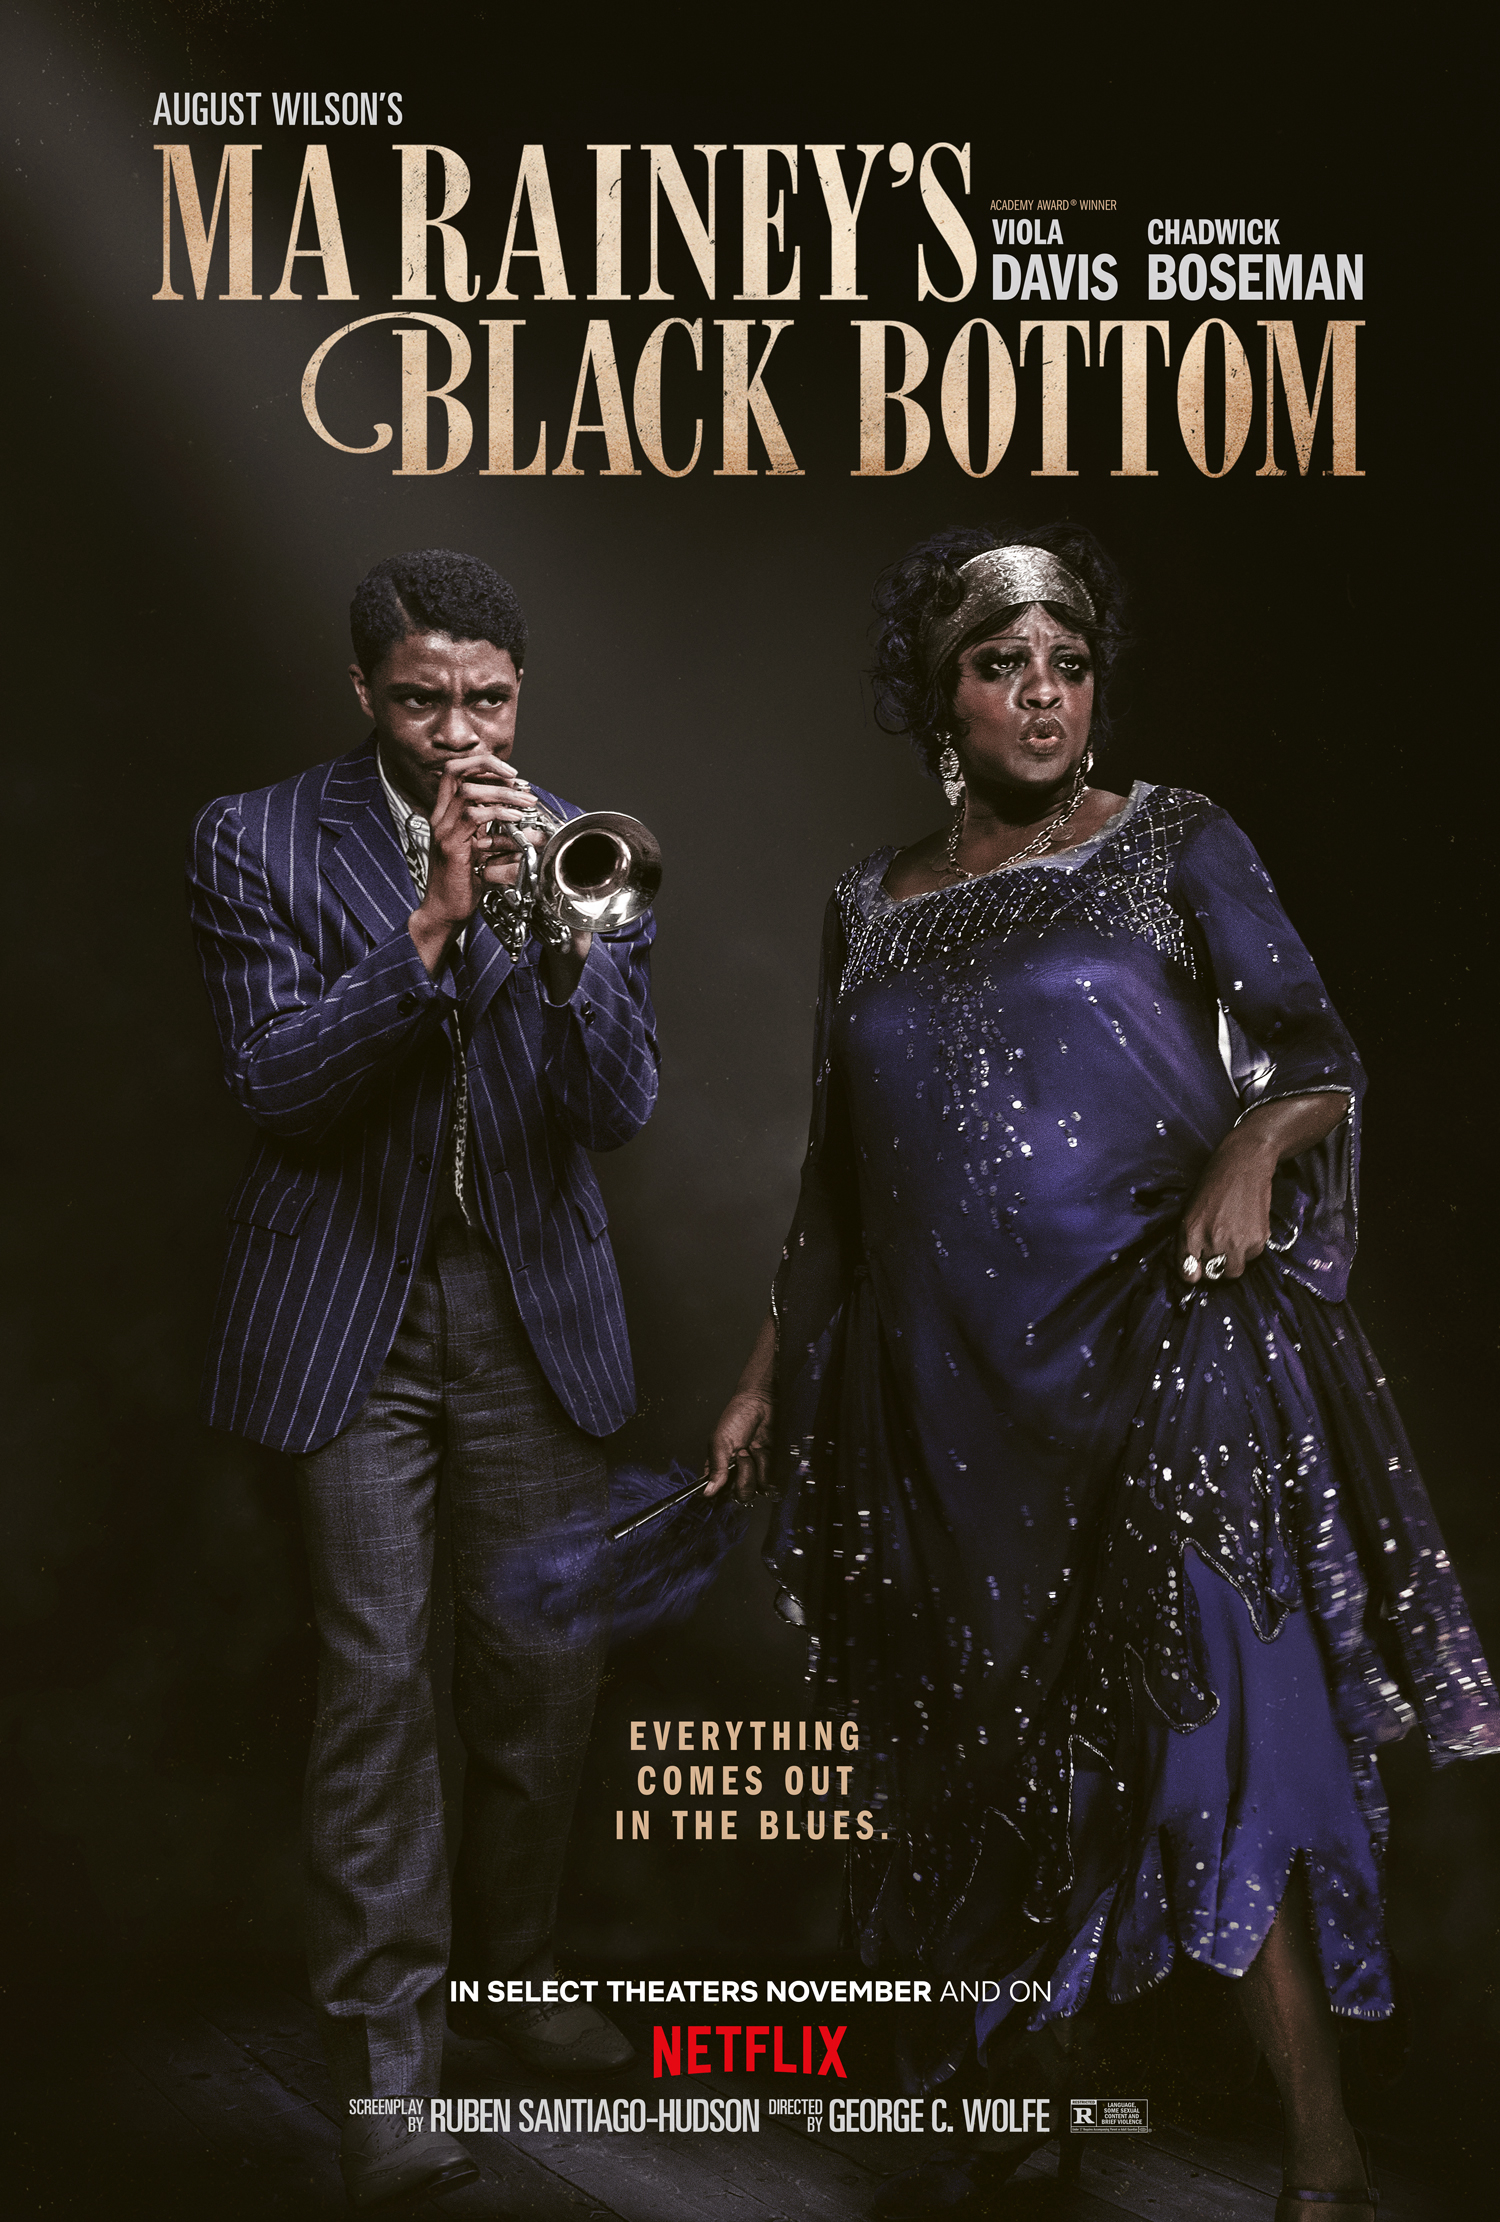 Xem Phim Điệu blues của Ma Rainey: Đưa huyền thoại lên màn ảnh (Ma Rainey's Black Bottom: A Legacy Brought to Screen)